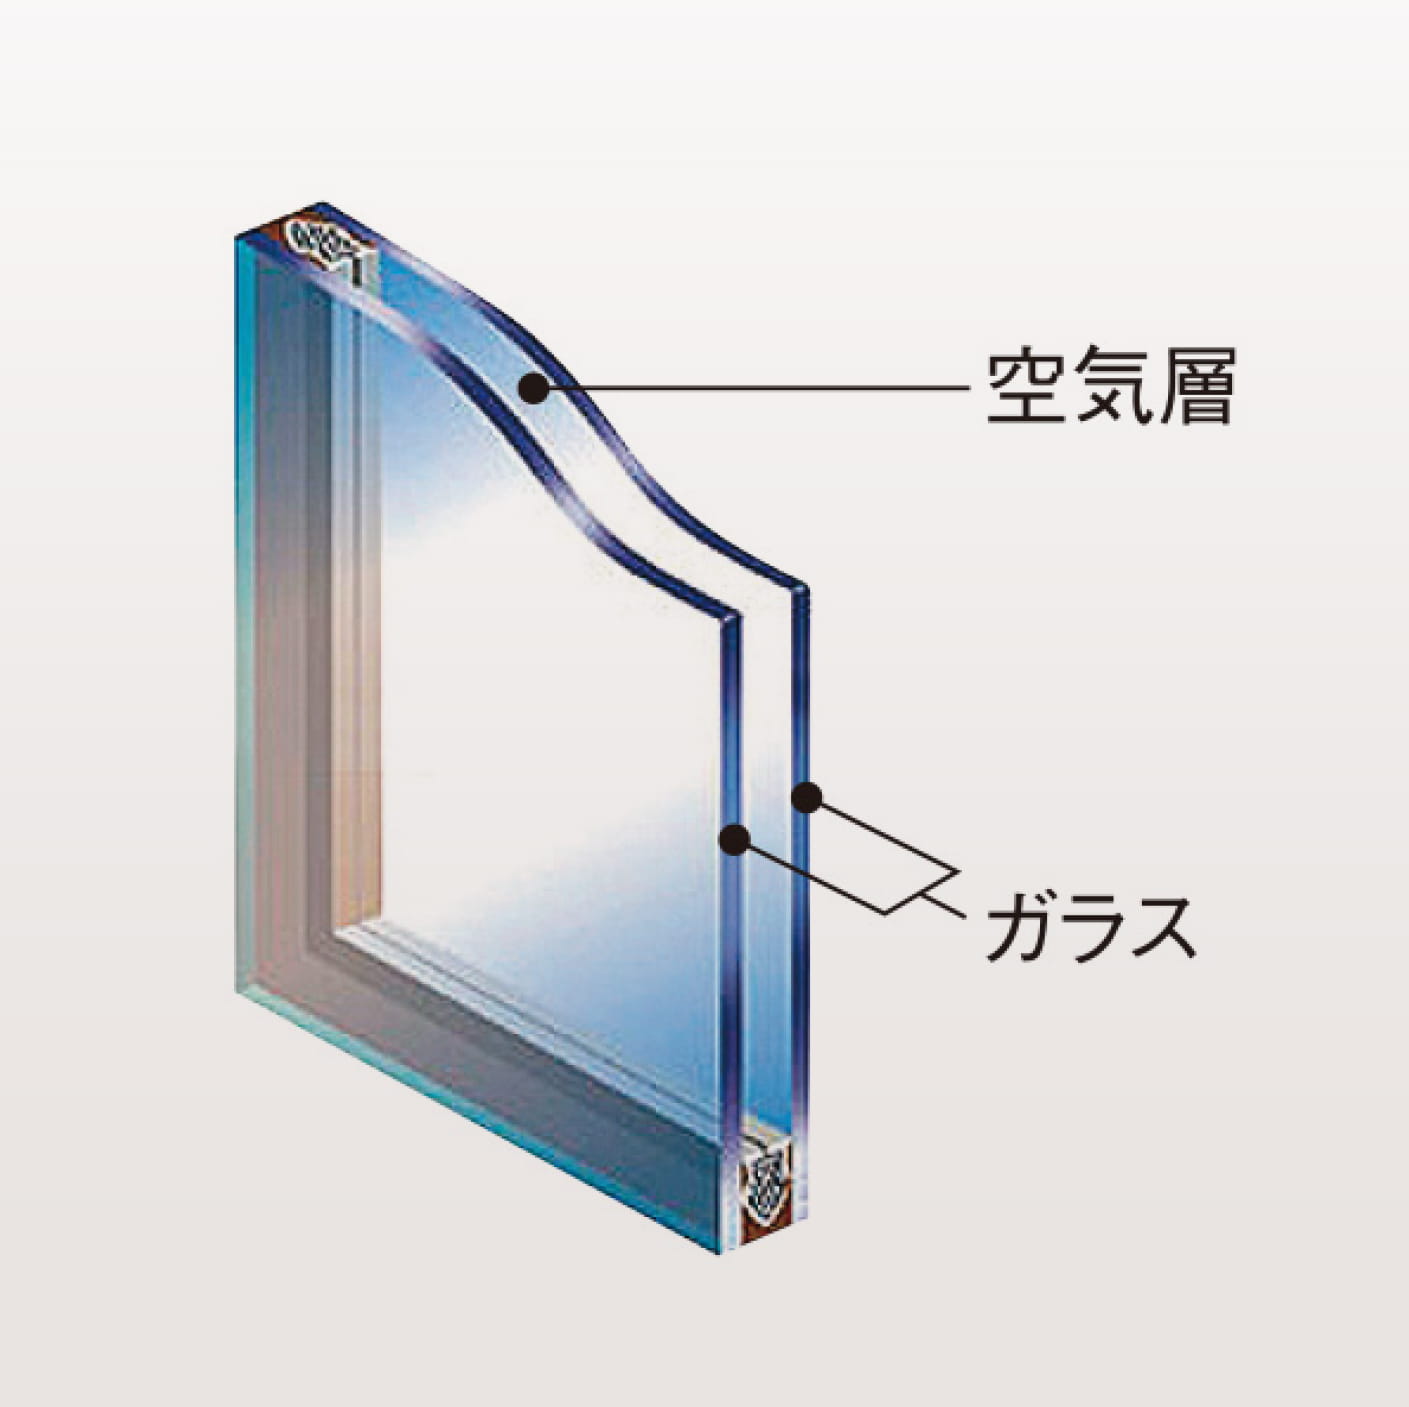 高断熱仕様の複層ガラス